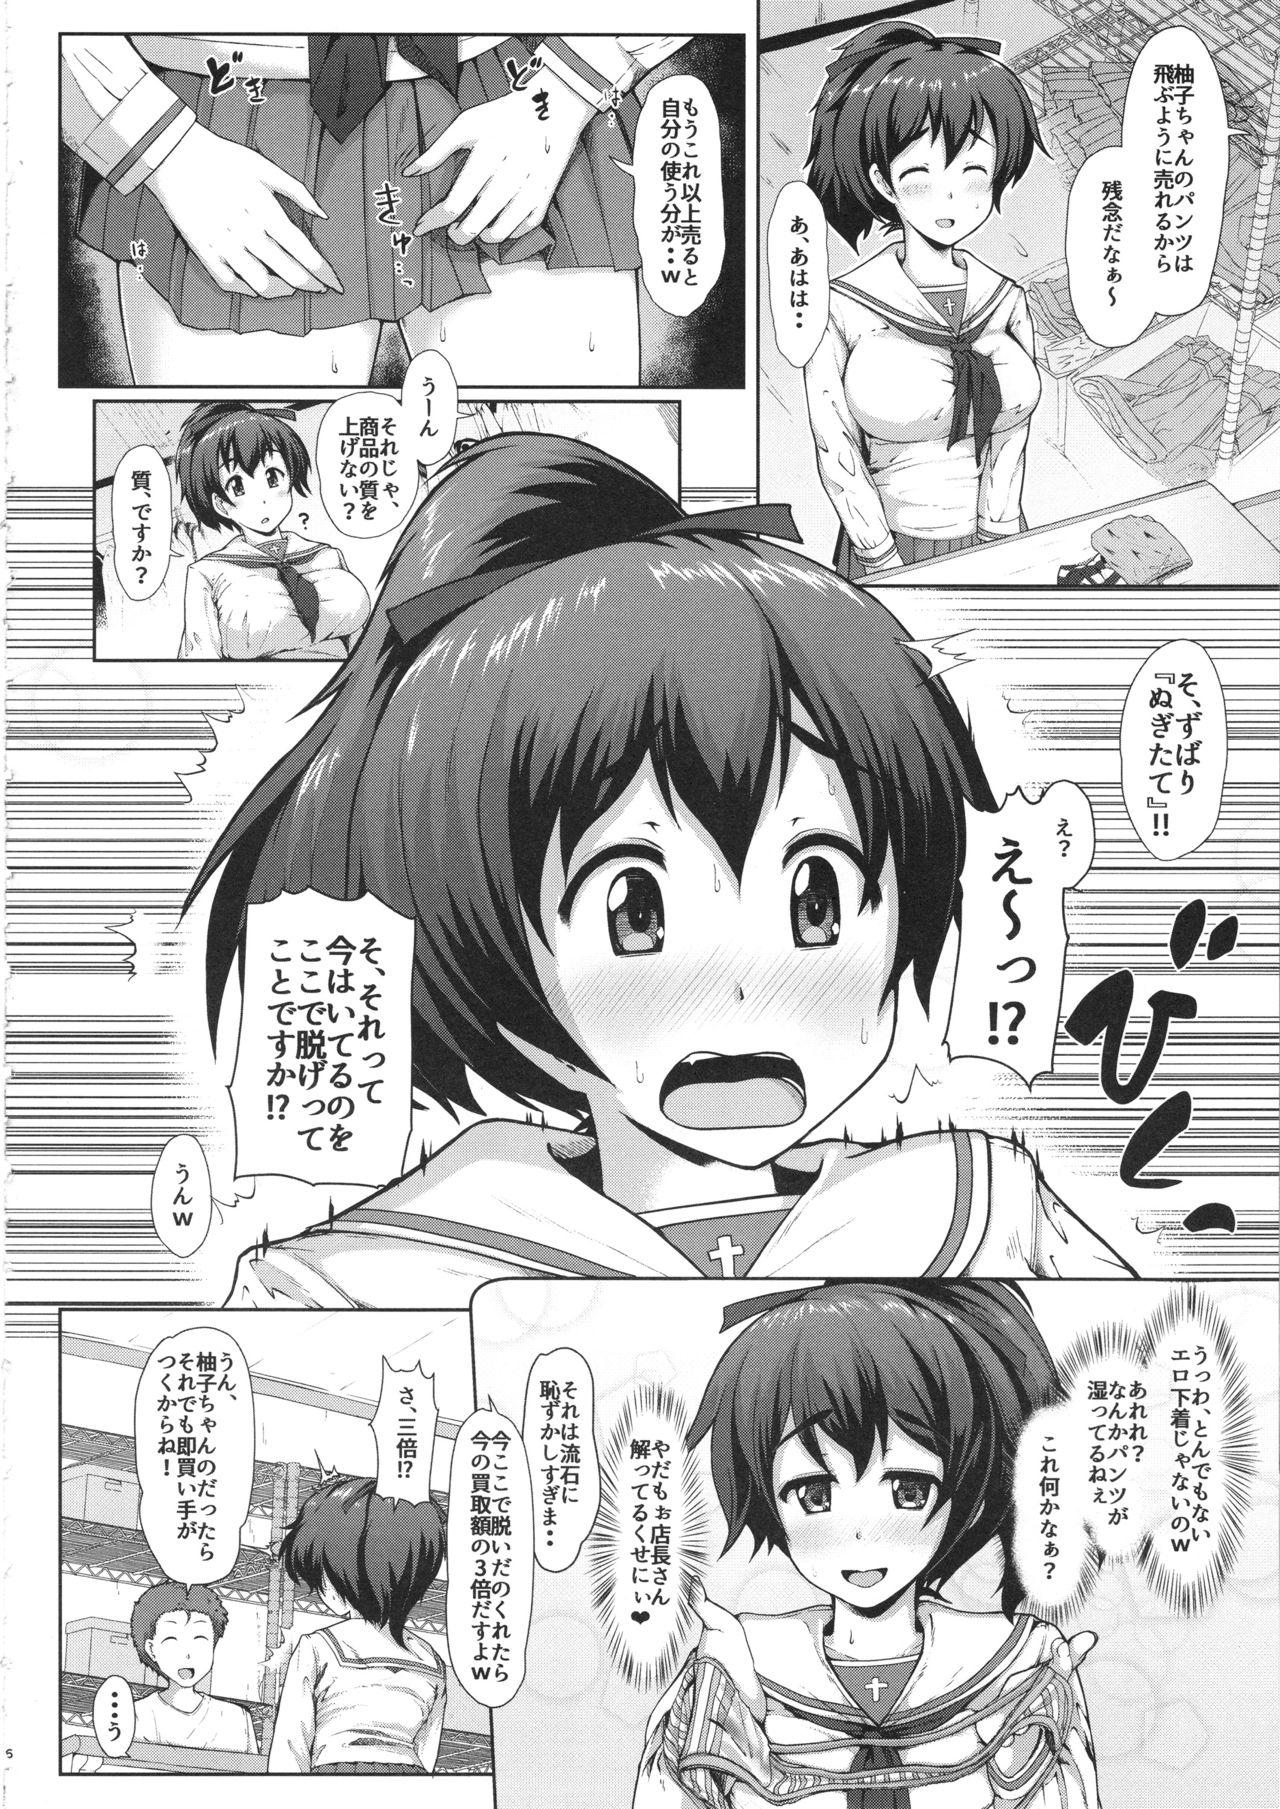 Scandal Yuzu-chan no Renkinjutsu - Girls und panzer Spying - Page 5